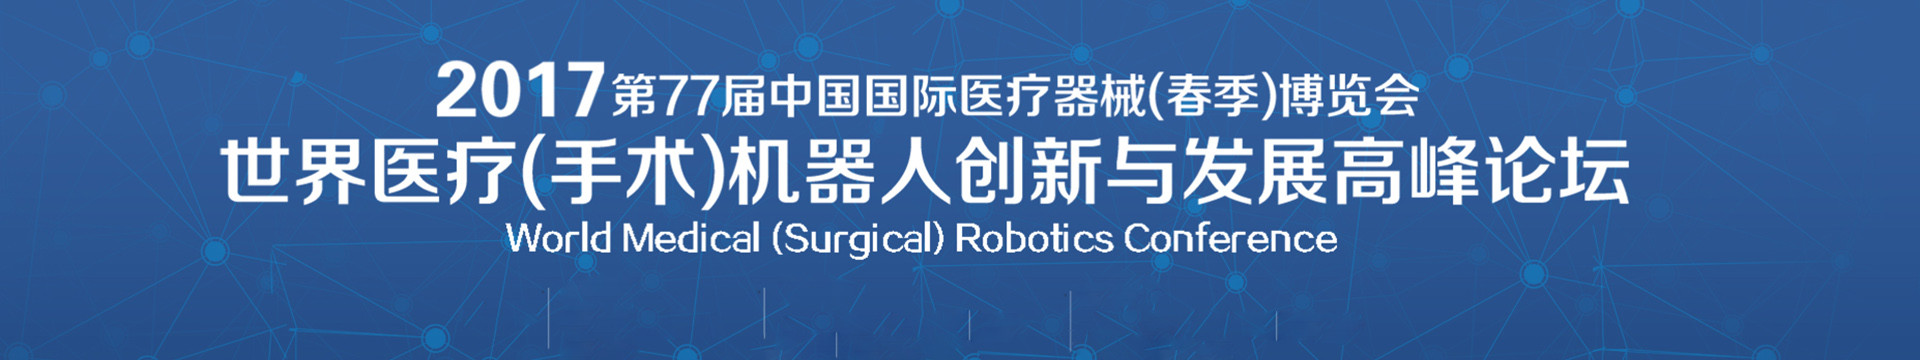 CMEF 2017世界医疗(手术)机器人创新与发展高峰论坛